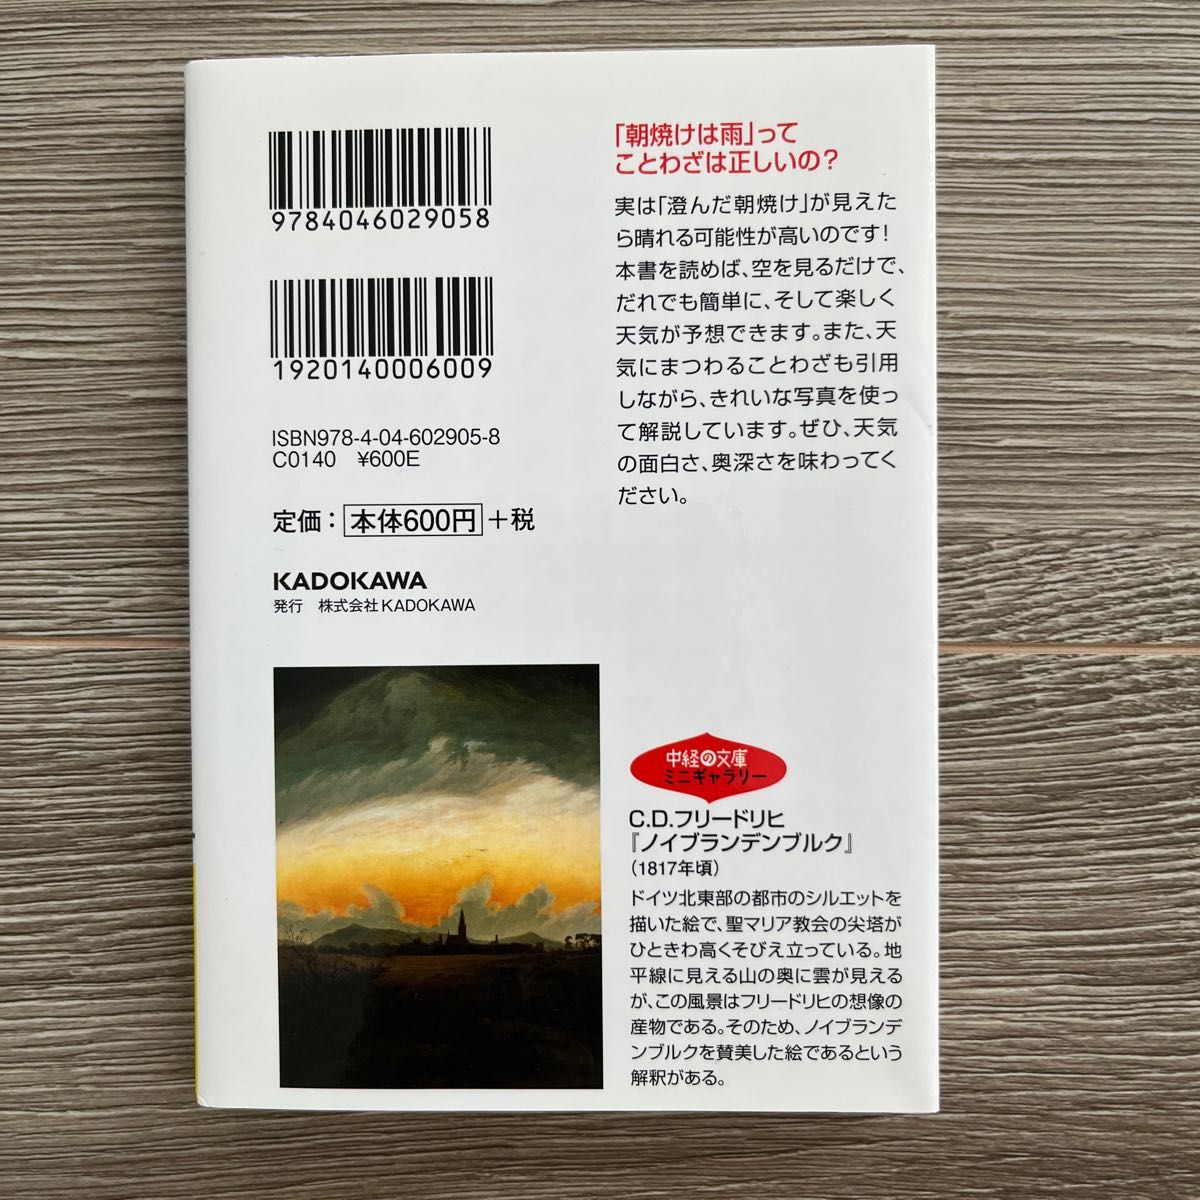 「自分で天気を予報できる本」 武田 康男  本 写真 空 天気